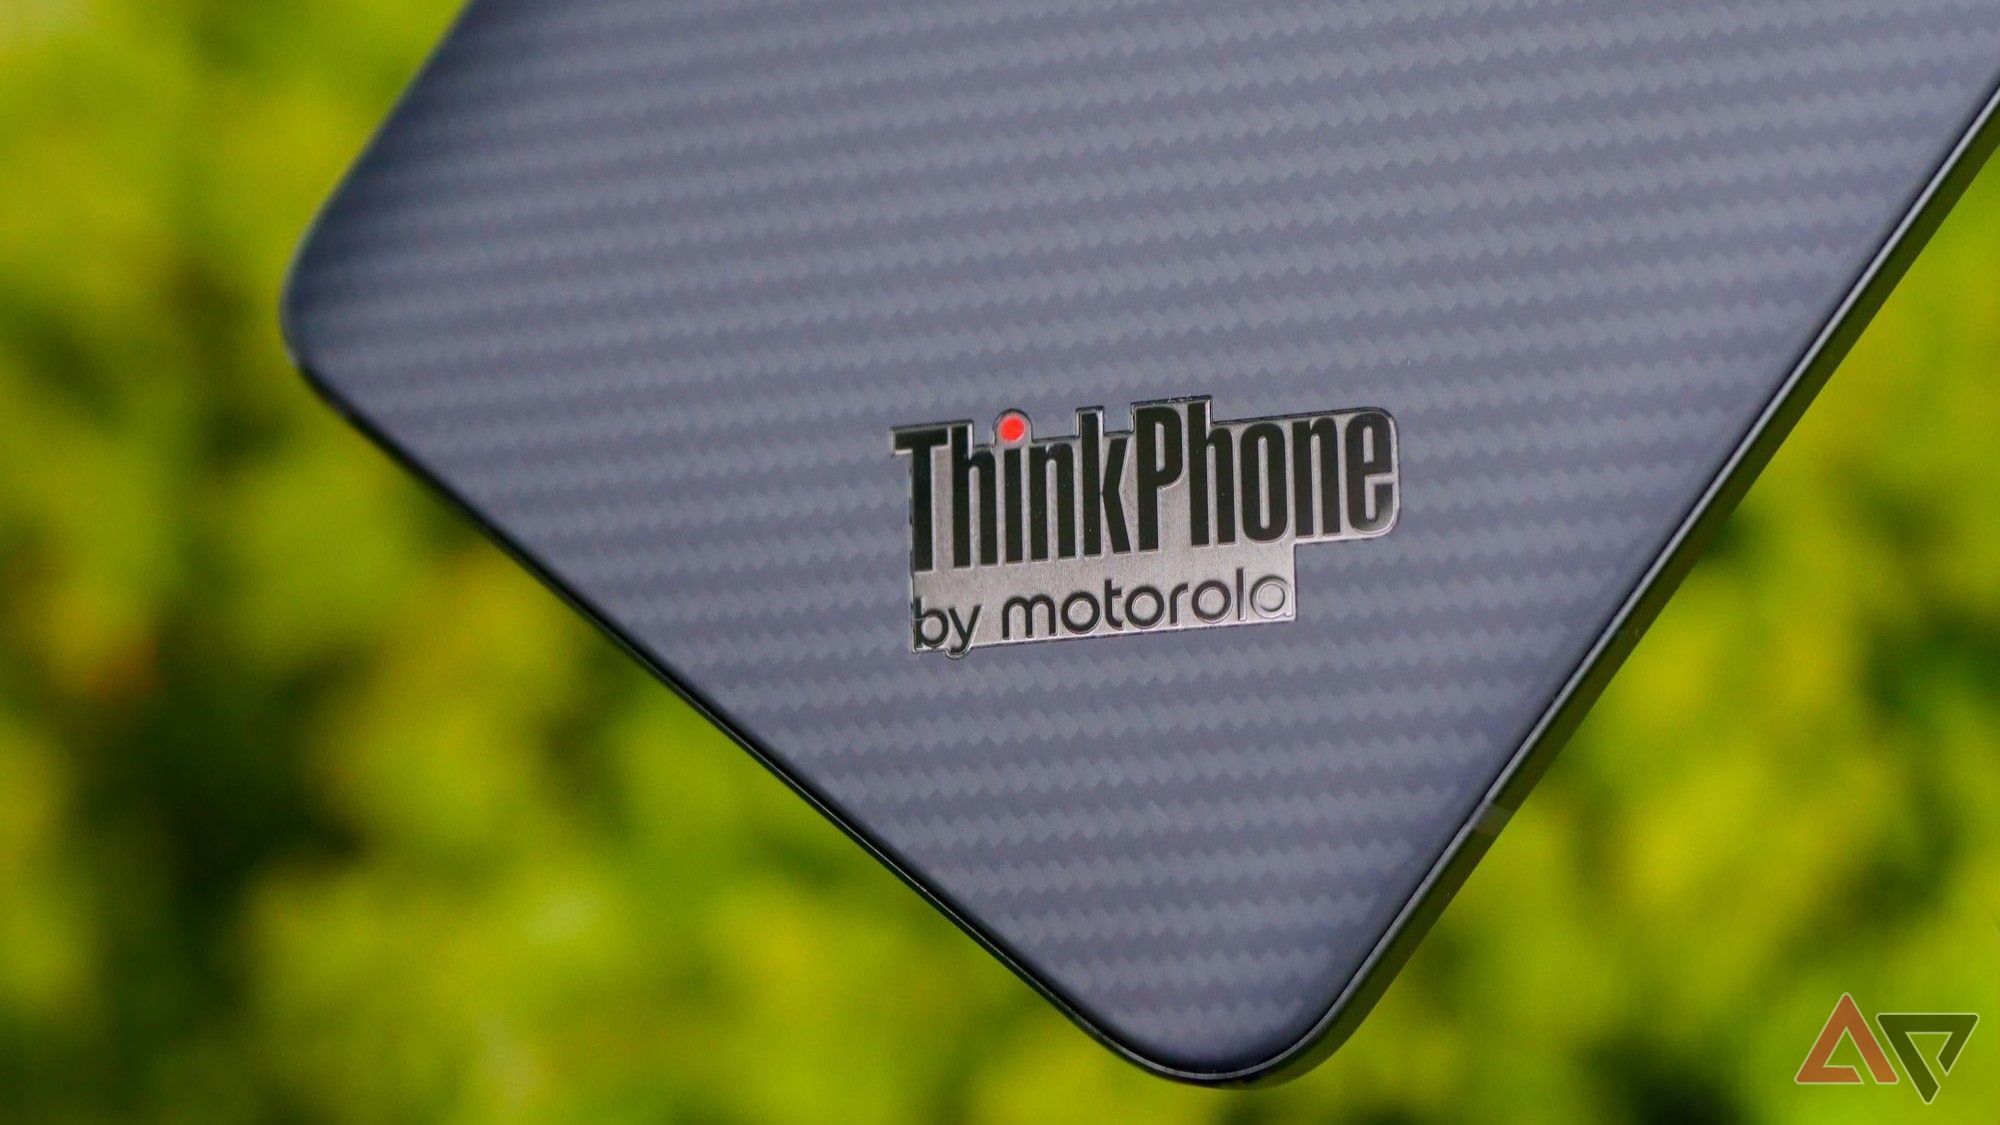 Um close-up no logotipo do ThinkPhone